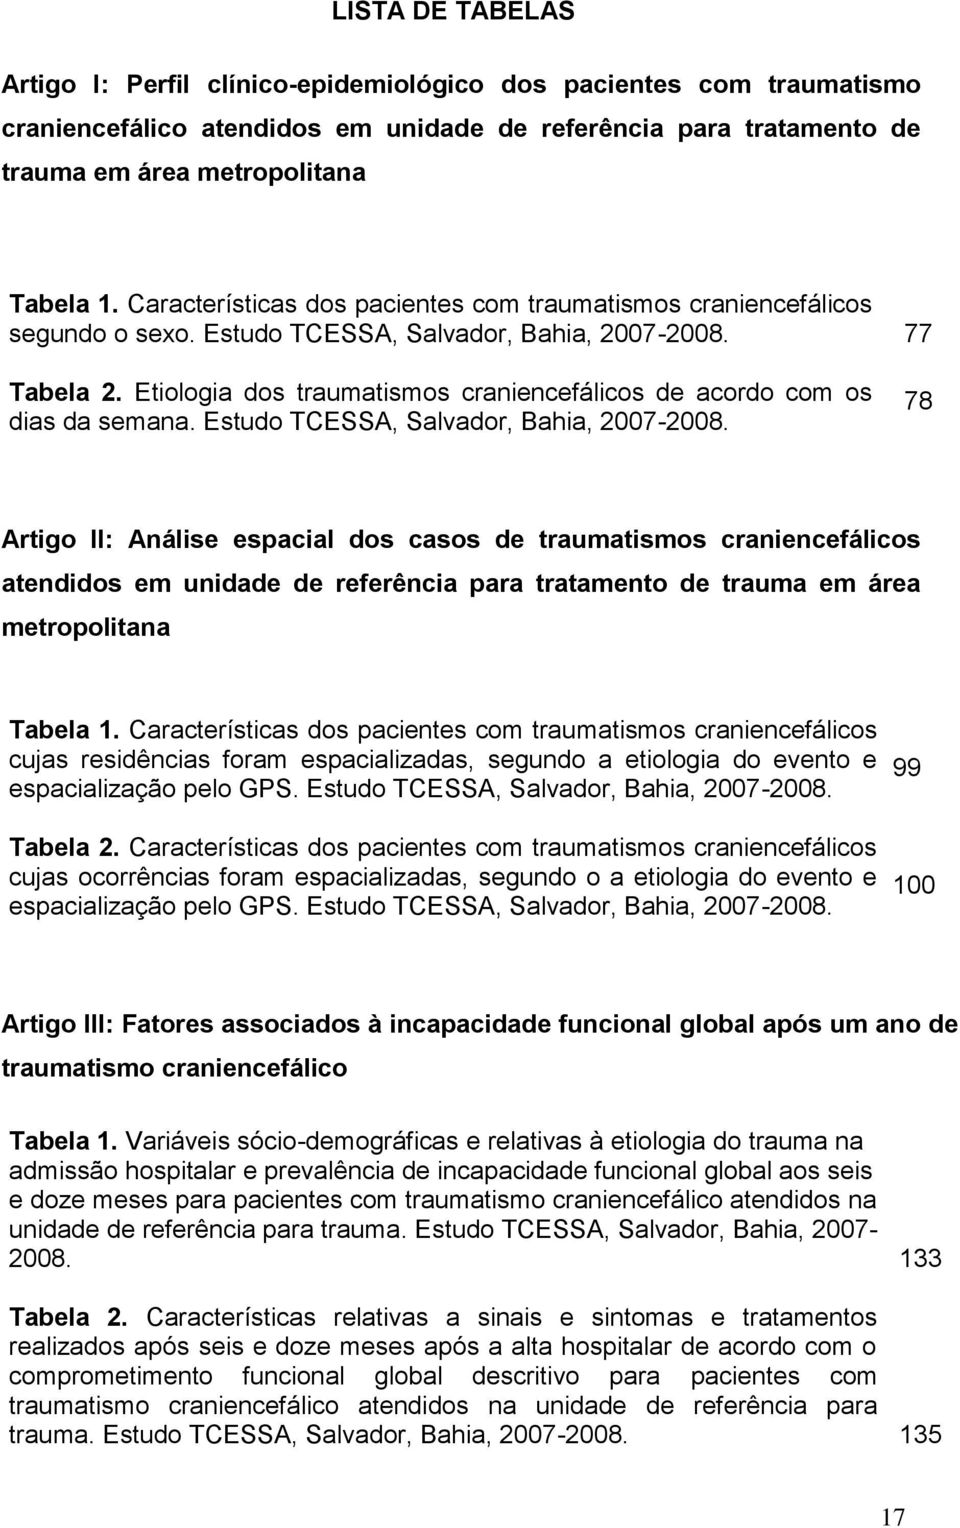 Etiologia dos traumatismos craniencefálicos de acordo com os dias da semana. Estudo TCESSA, Salvador, Bahia, 2007-2008.